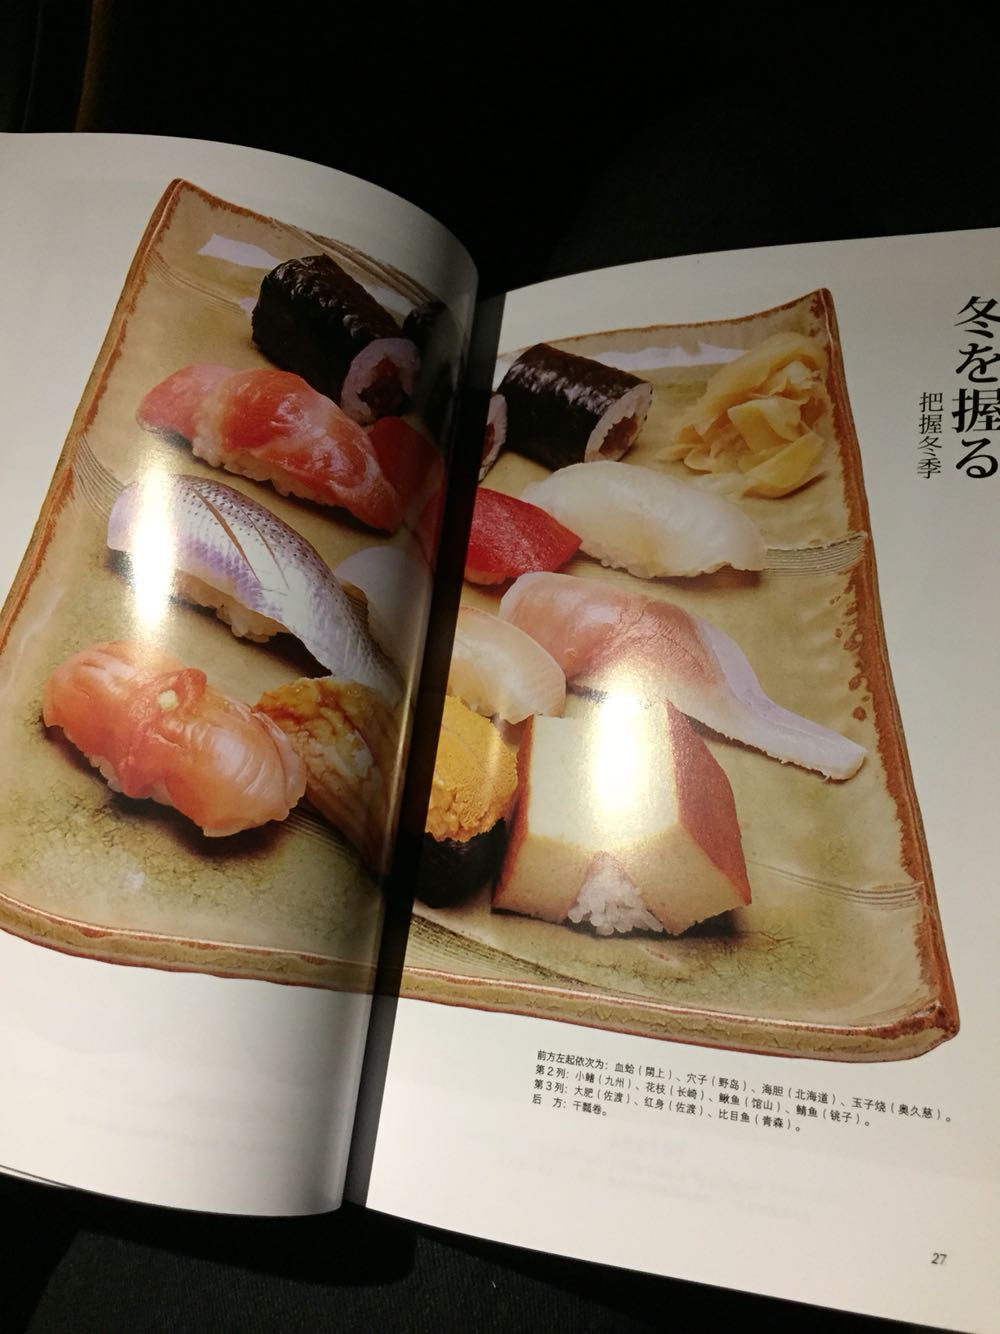 这本书是我最爱的chef的介绍，虽然不能去东京吃这一家，看了这本书对今后吃日本料理有帮助